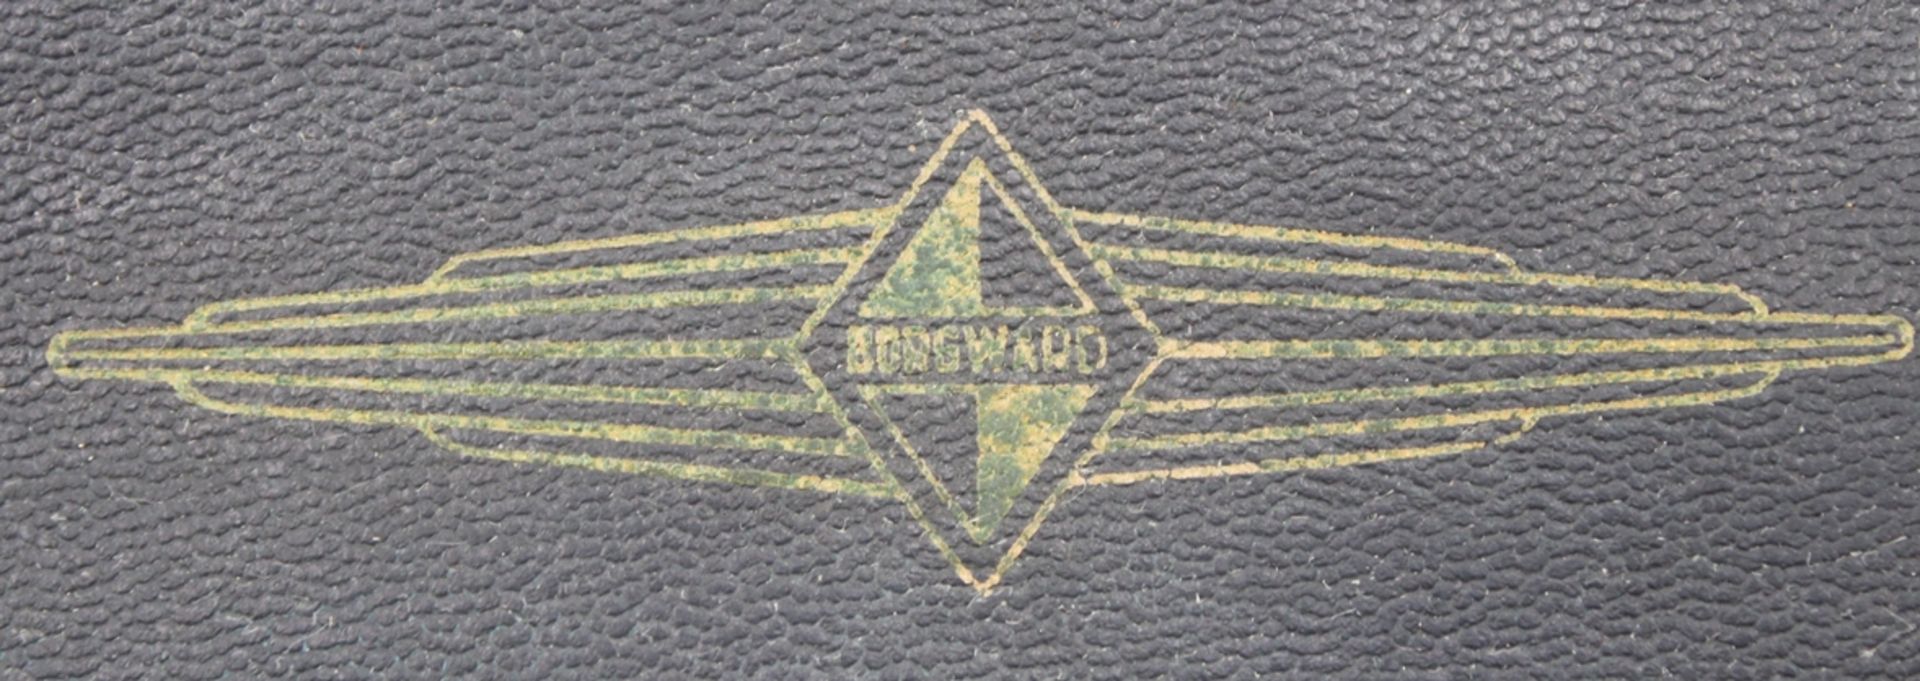 Borgward-Wagenpapiere Mappe, älter, Leder, Gebrauchsspuren, 17 x 24,5cm. - Bild 2 aus 3